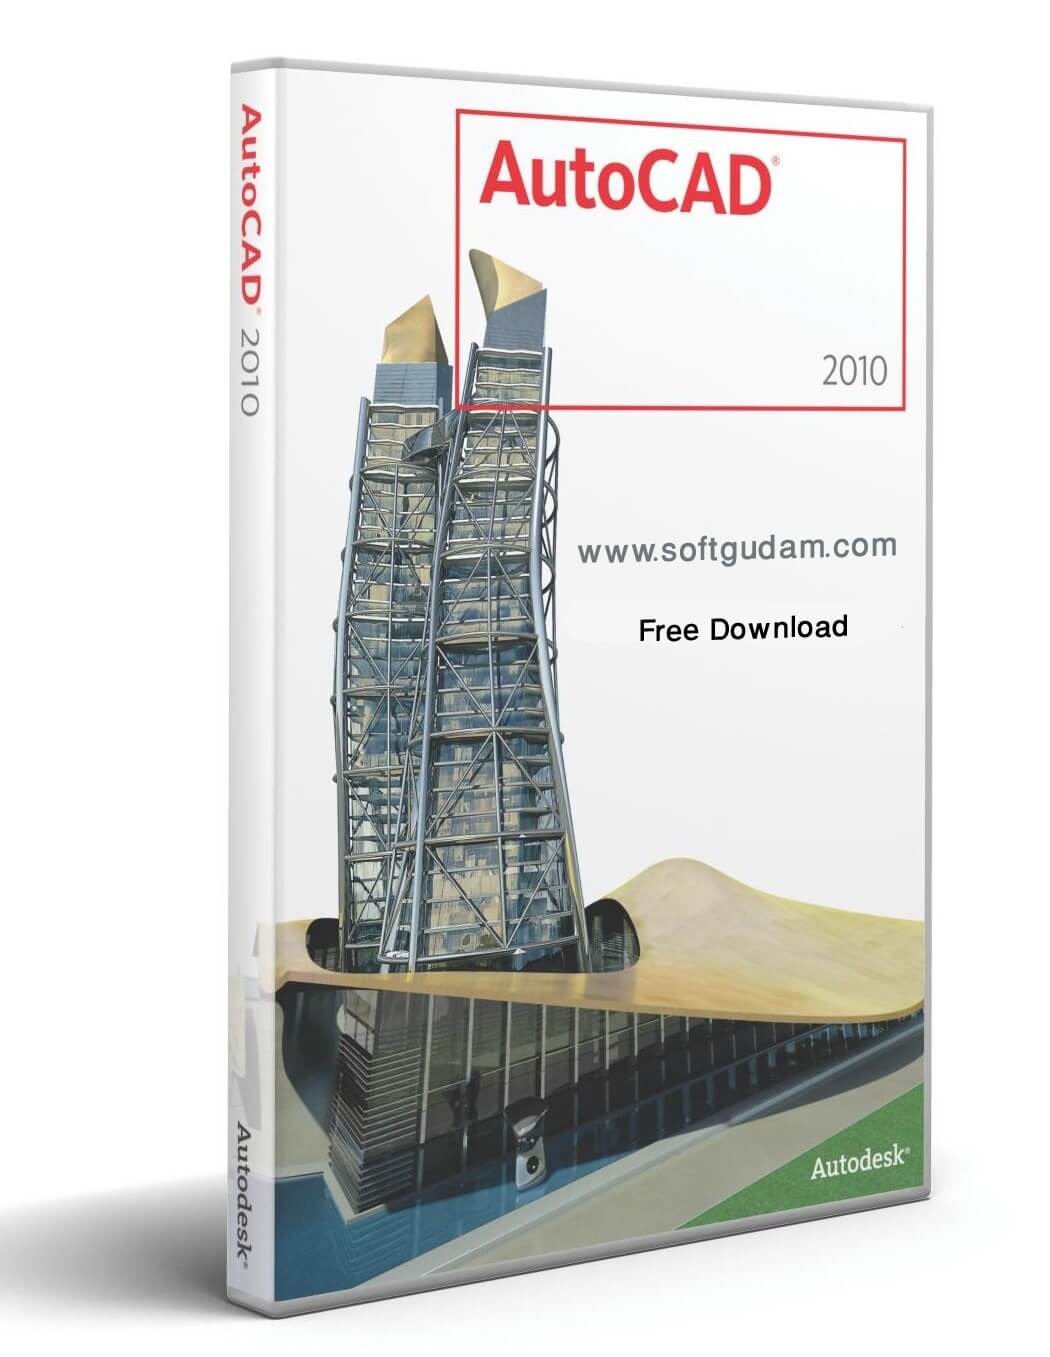 AutoCAD 2010 Full Version